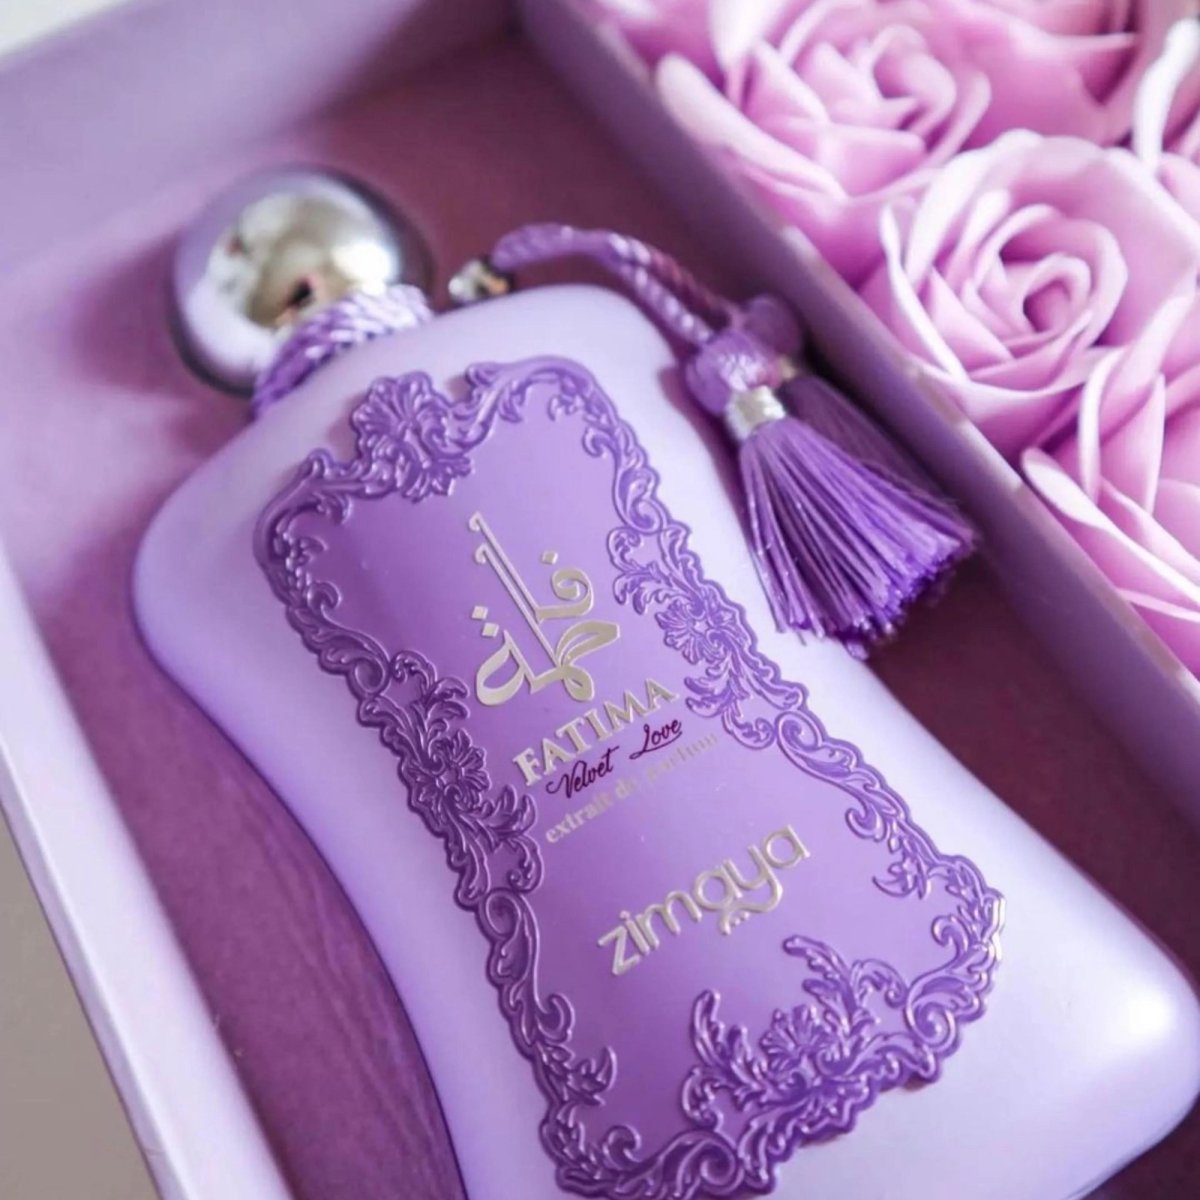  - Afnan - 3.4 oz - Eau de Parfum - Fragrance - 6290171071068 - 